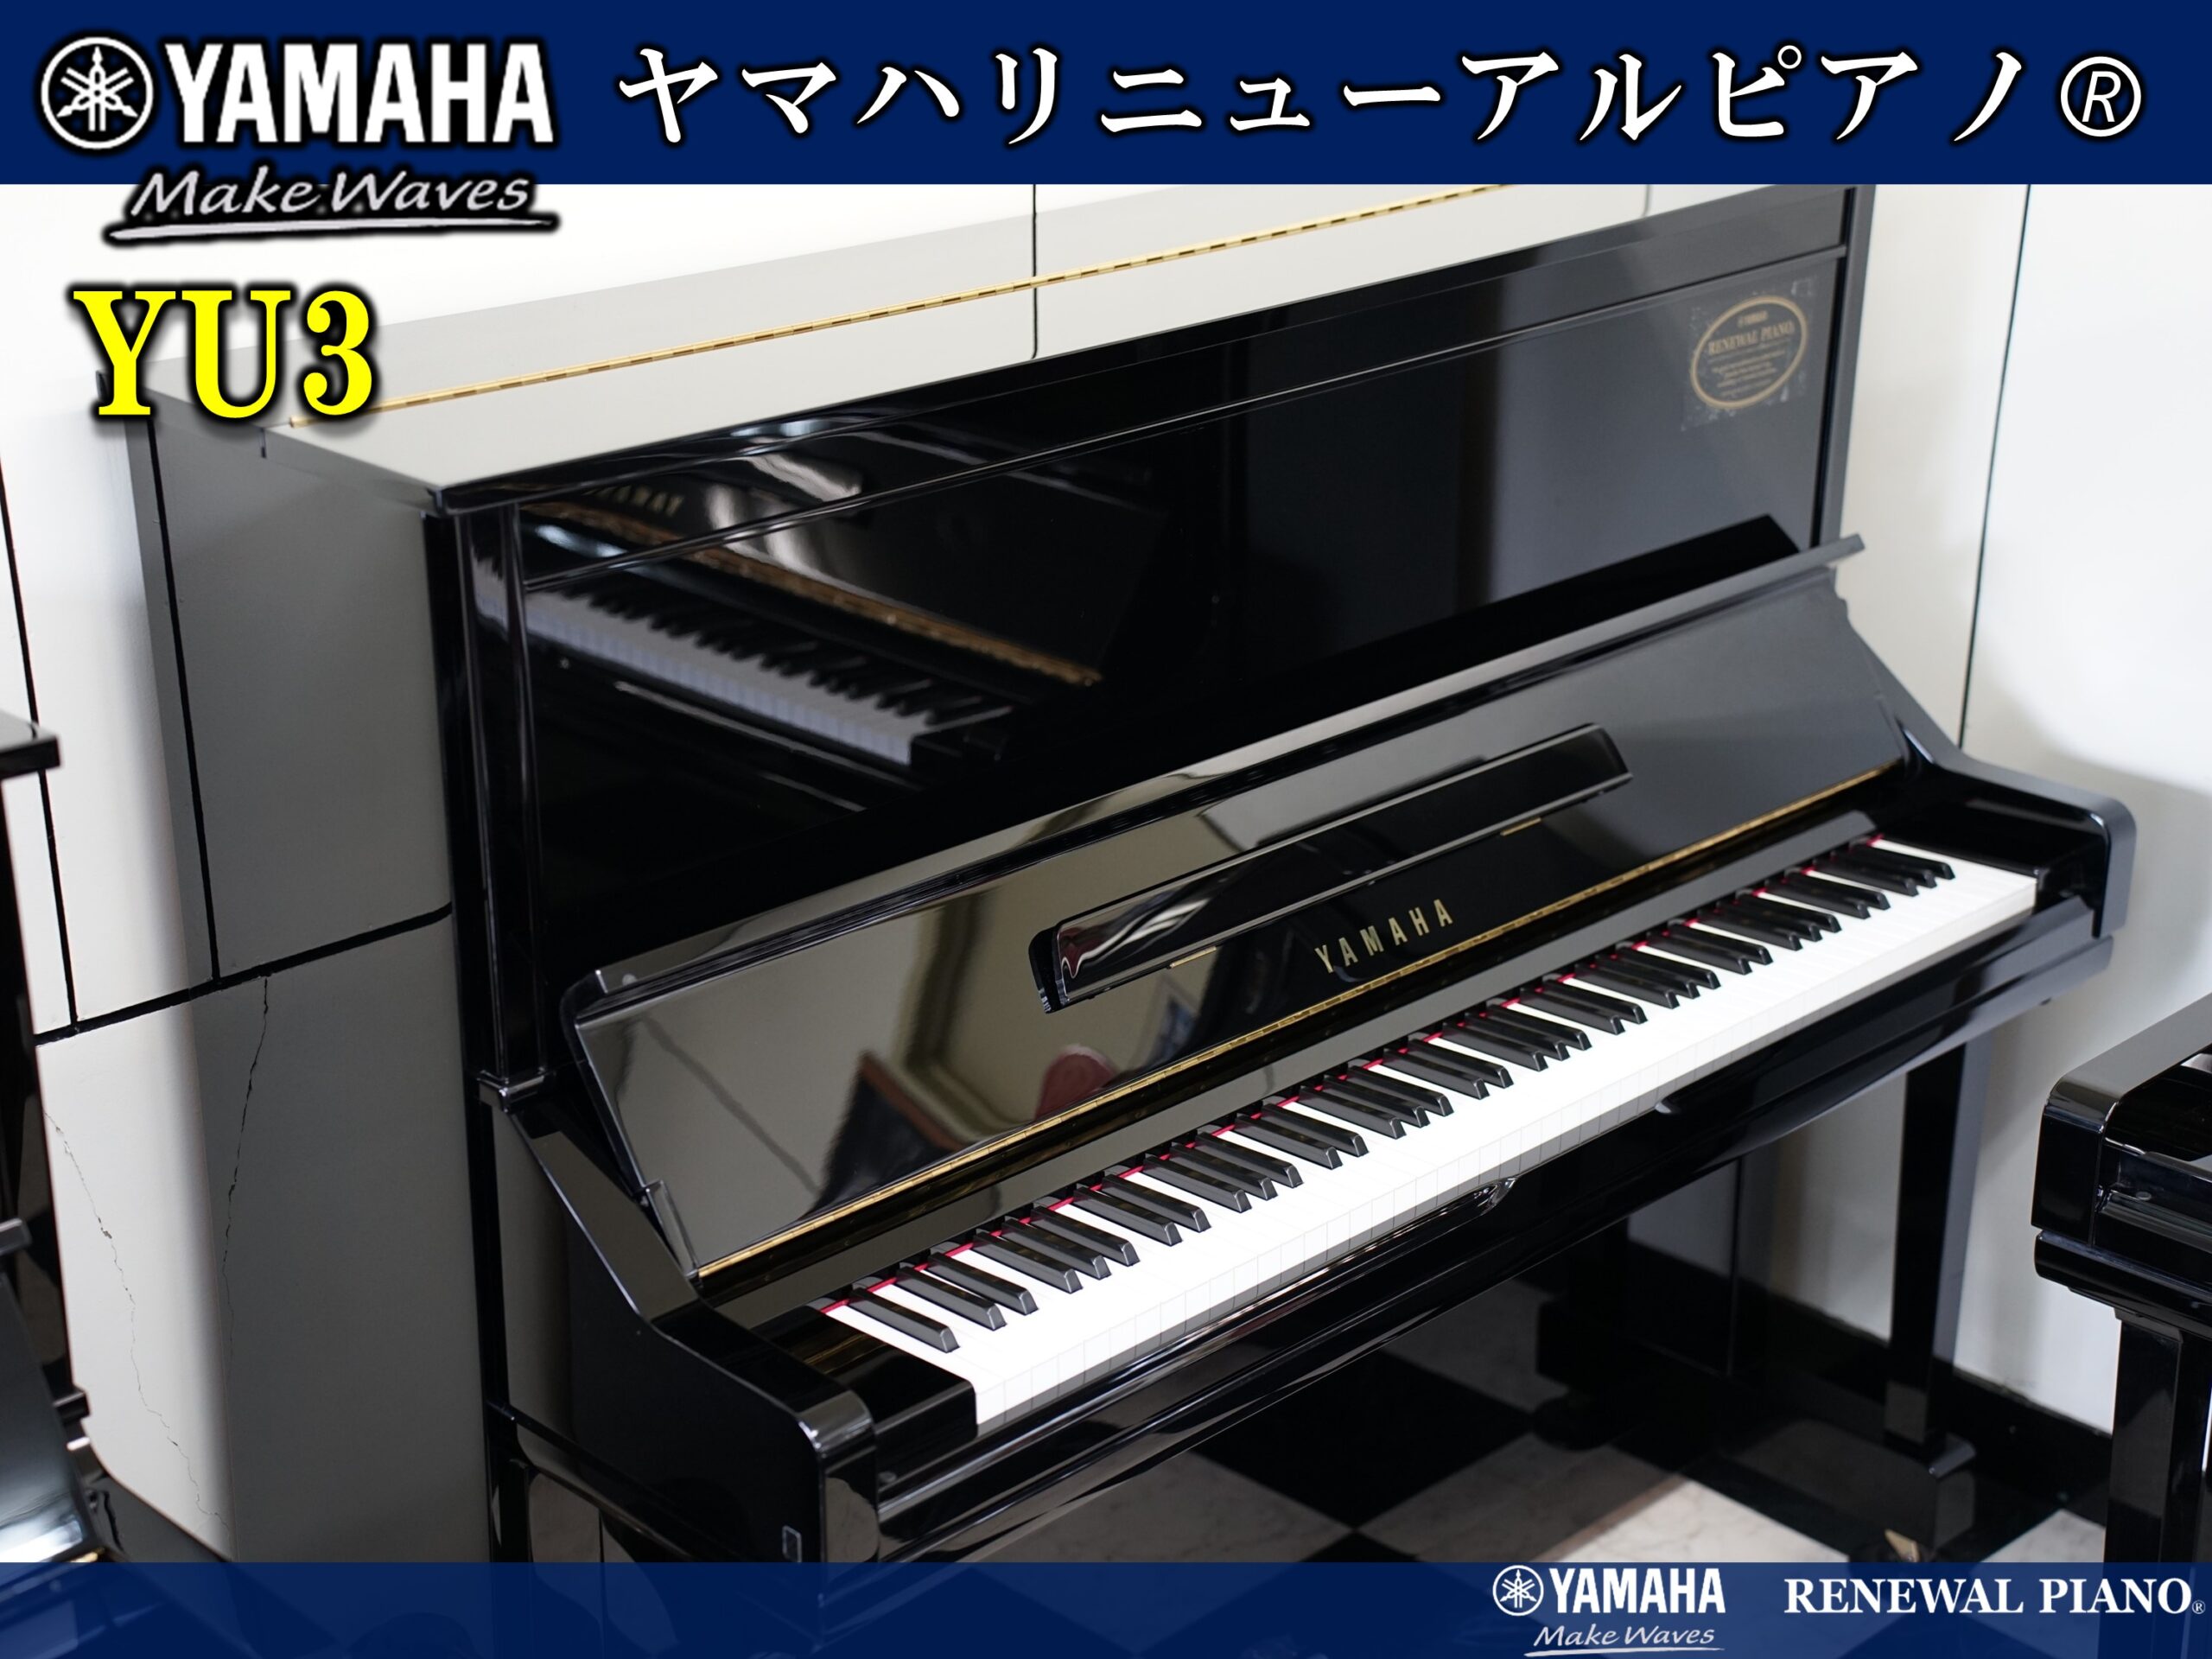 ヤマハリニューアルピアノ YU3 | 福岡のヤマハ中古ピアノなら株式会社 